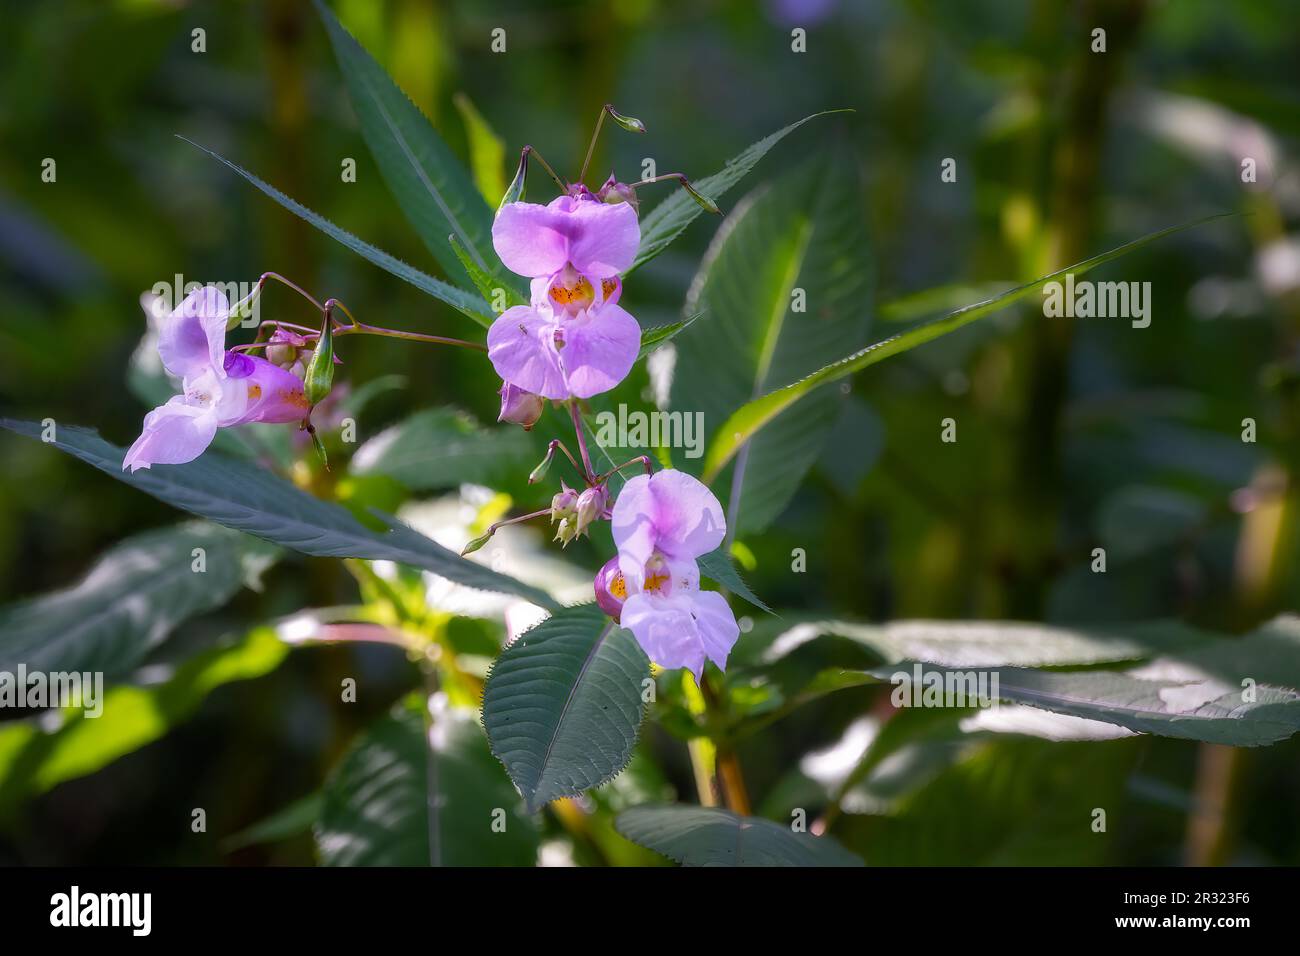 Impatiens glandulifera Royle o fiori di balsamo himalayani, una specie invasiva in Inghilterra Foto Stock